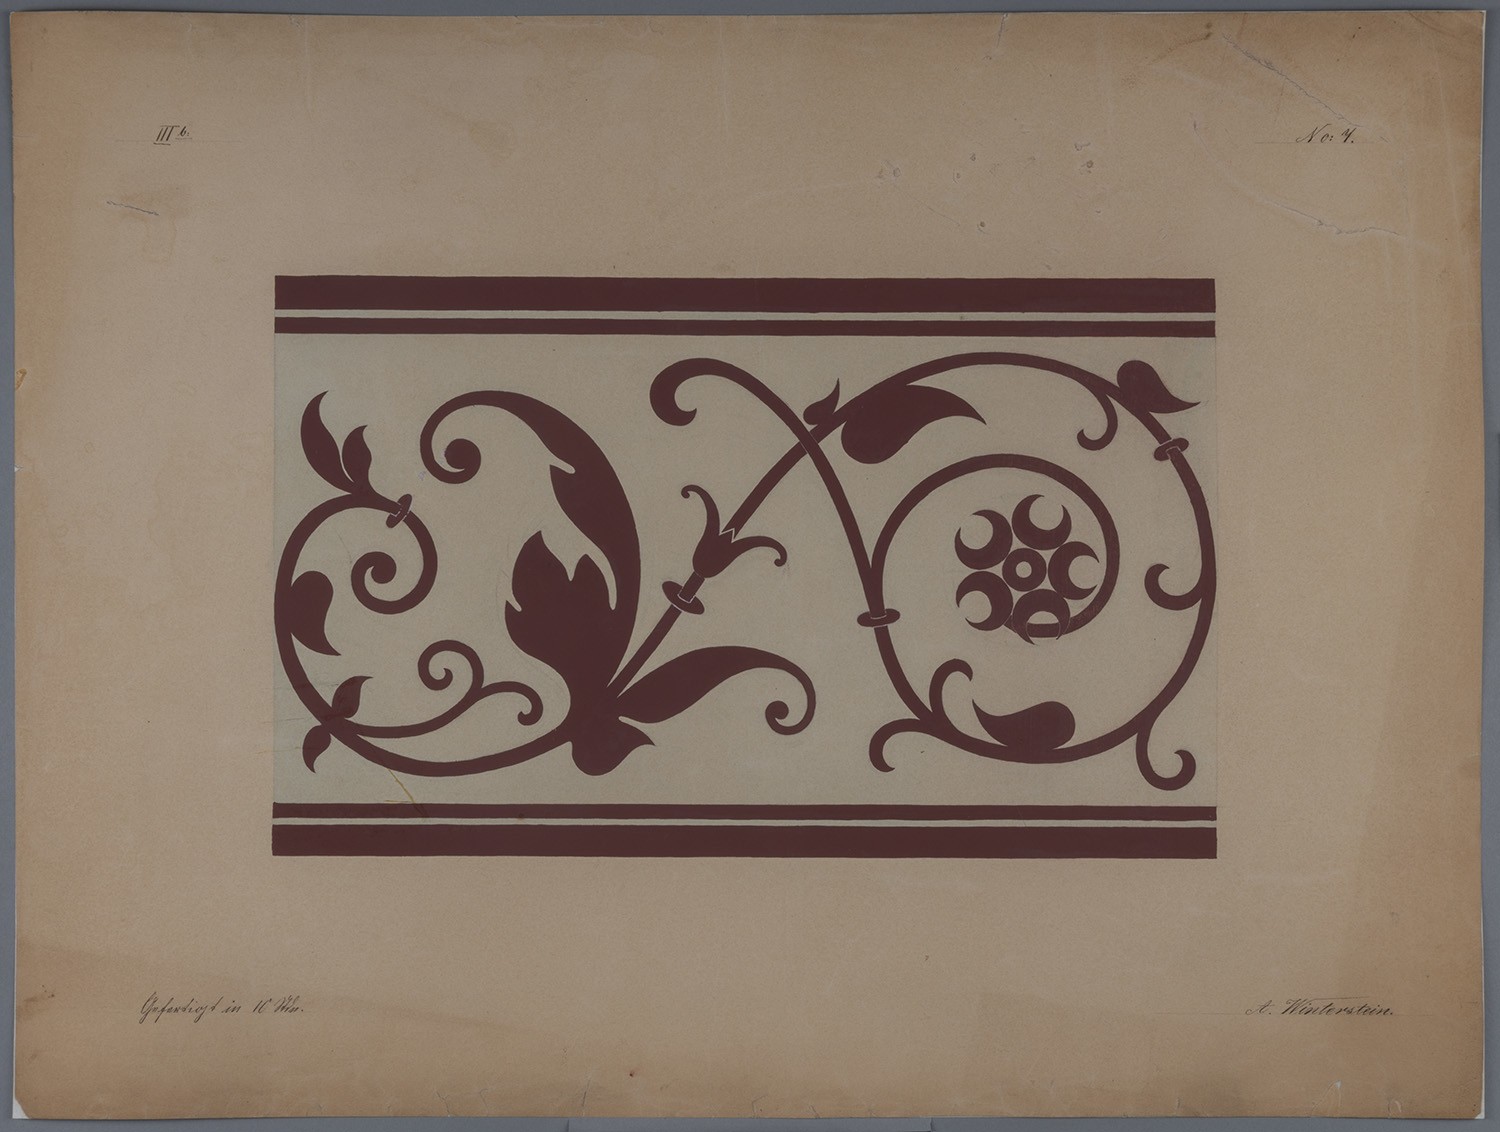 Fries-Entwurf mit stilisierter Weinranke (Landesgeschichtliche Vereinigung für die Mark Brandenburg e.V., Archiv CC BY)